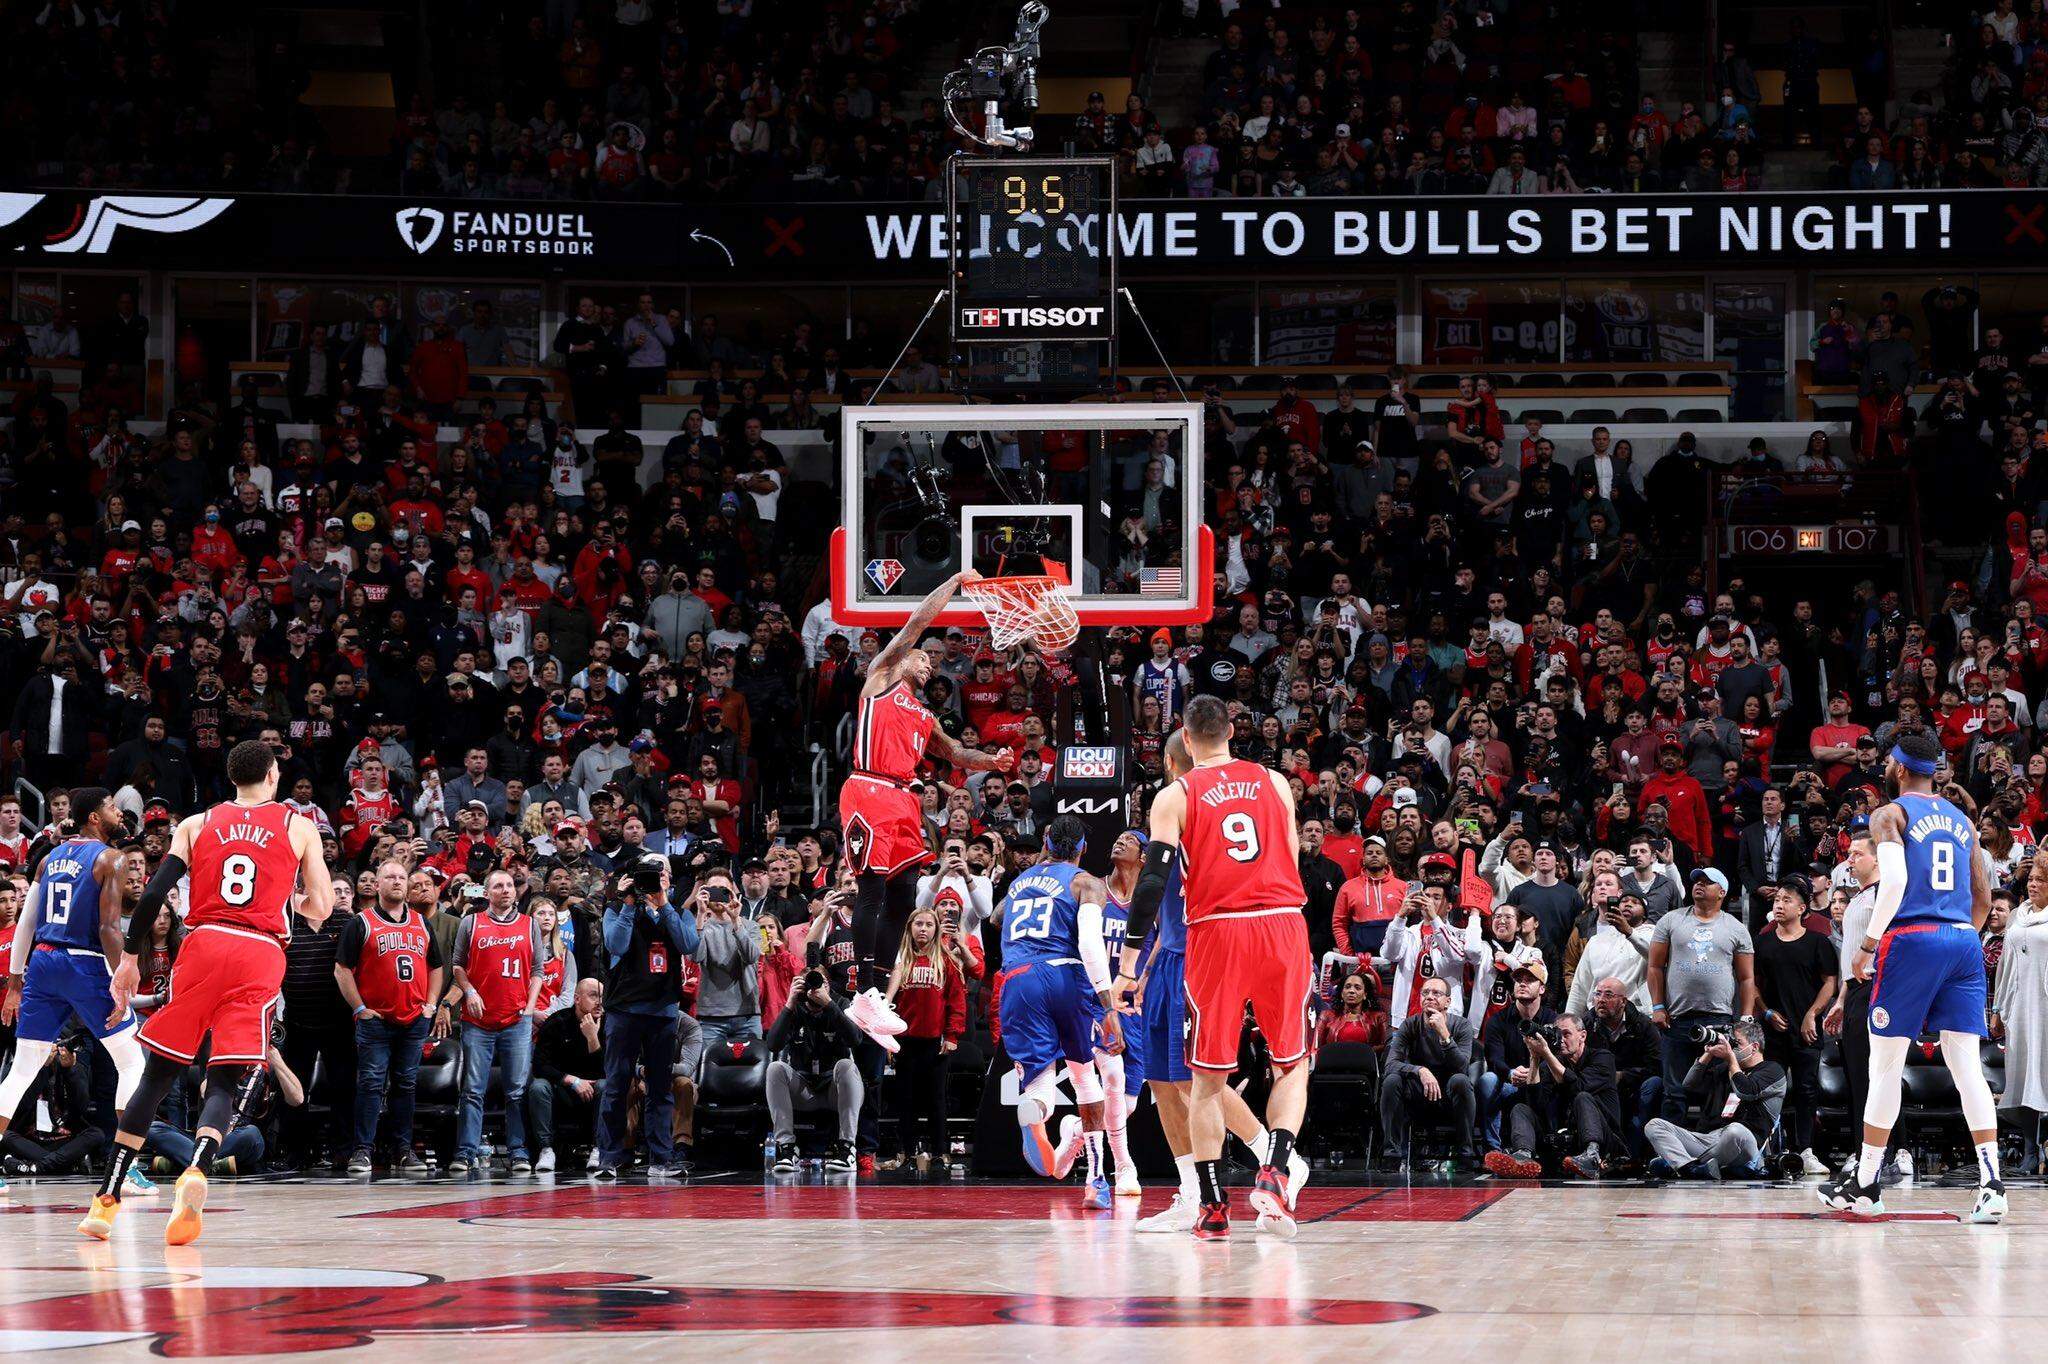 Basquete: Assistindo a um jogo dos Chicago Bulls - Viajonários